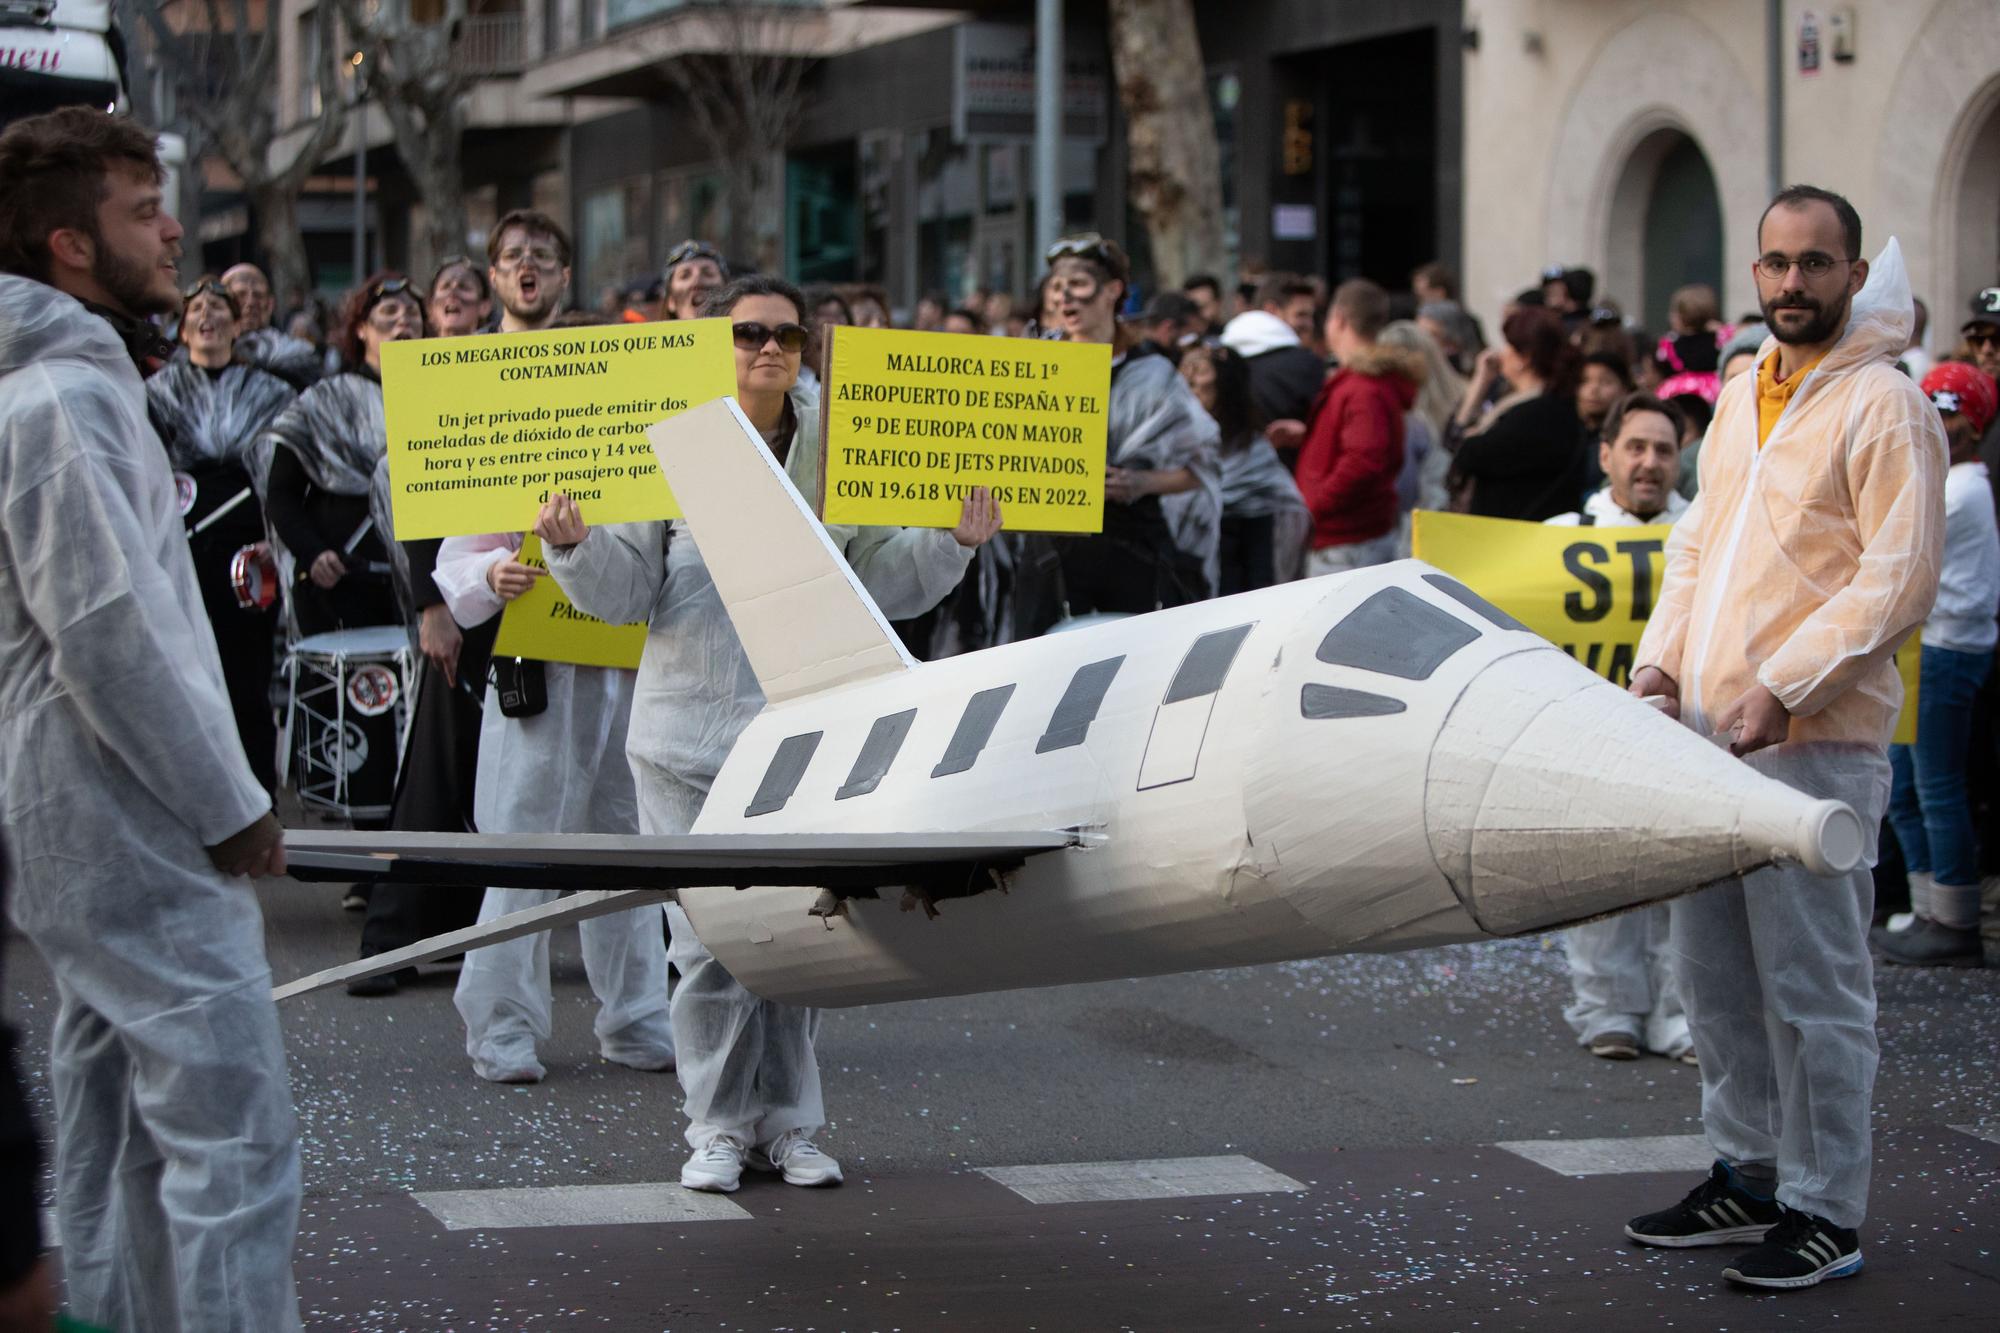 Karneval auf Mallorca: Die besten Bilder vom großen Umzug in Palma